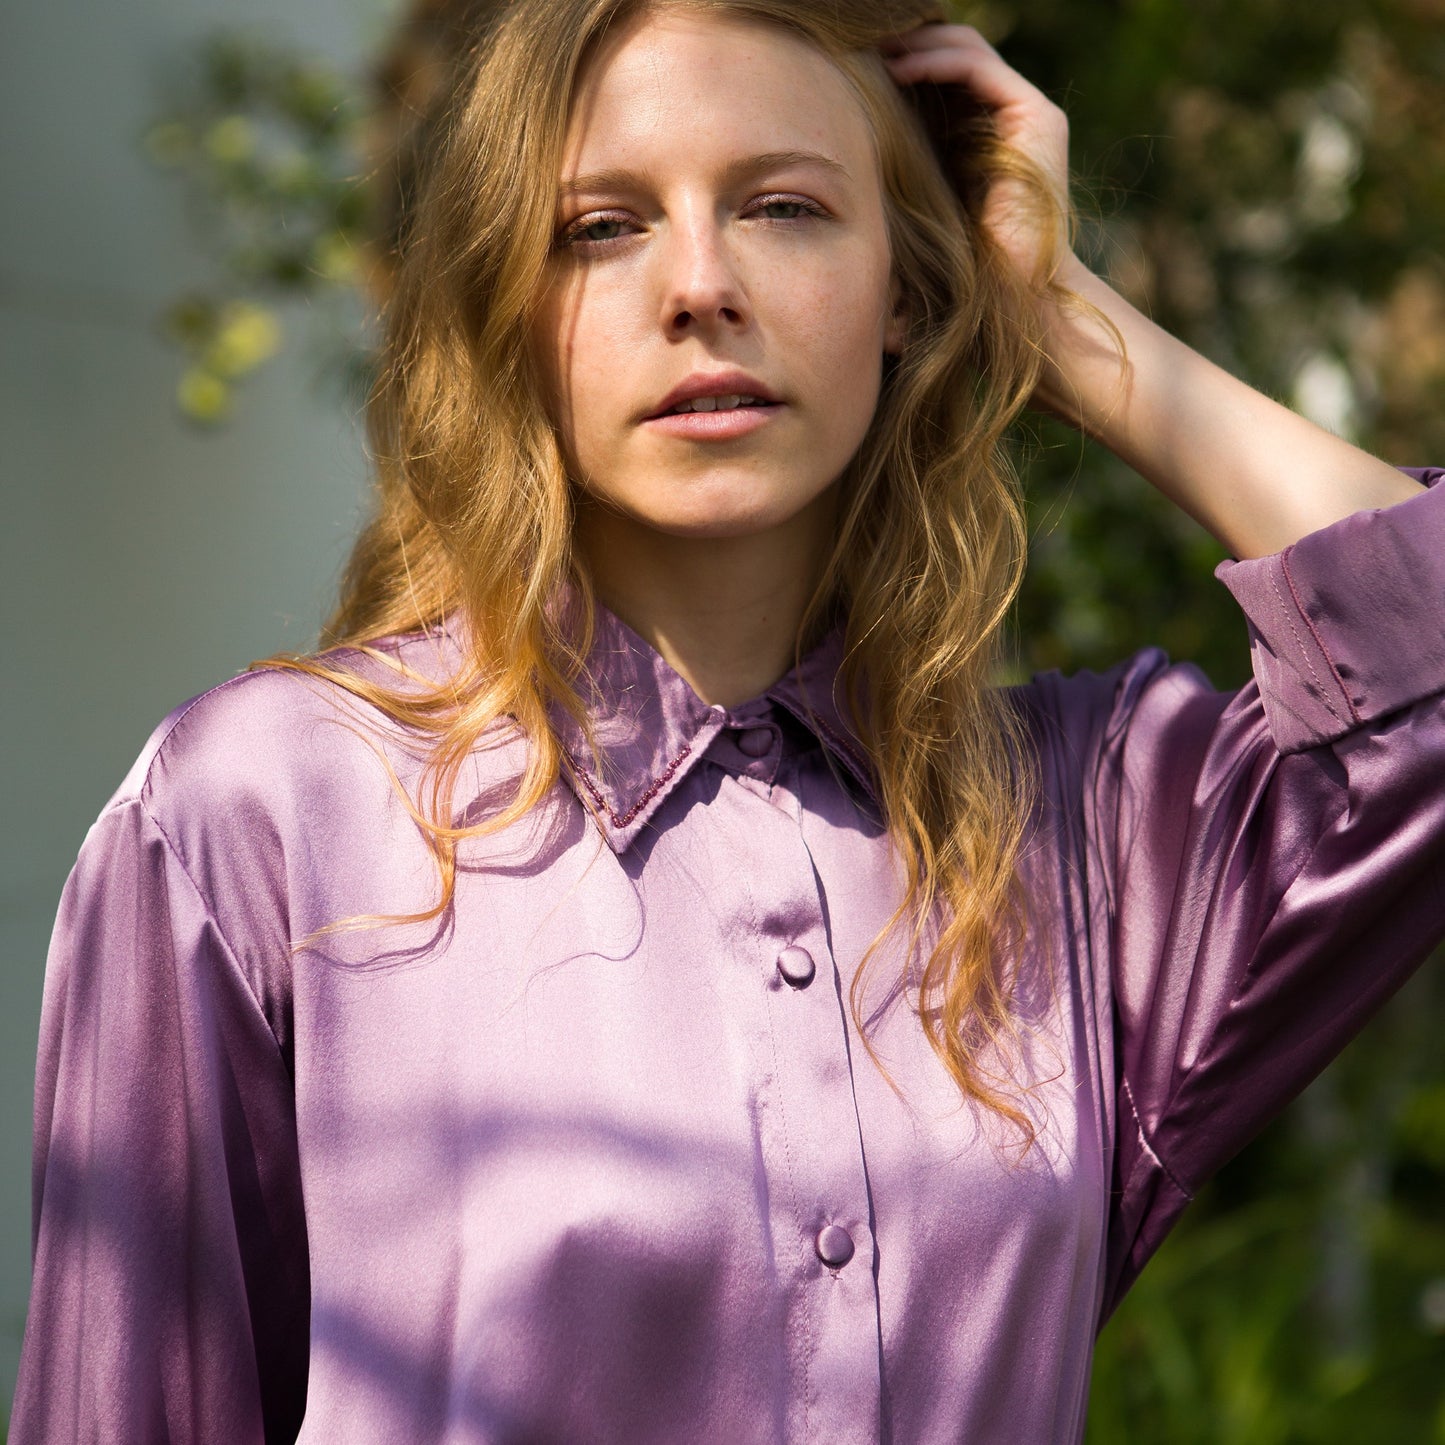 Versatile silk shirt dress featuring a classic collar with handbeaded details